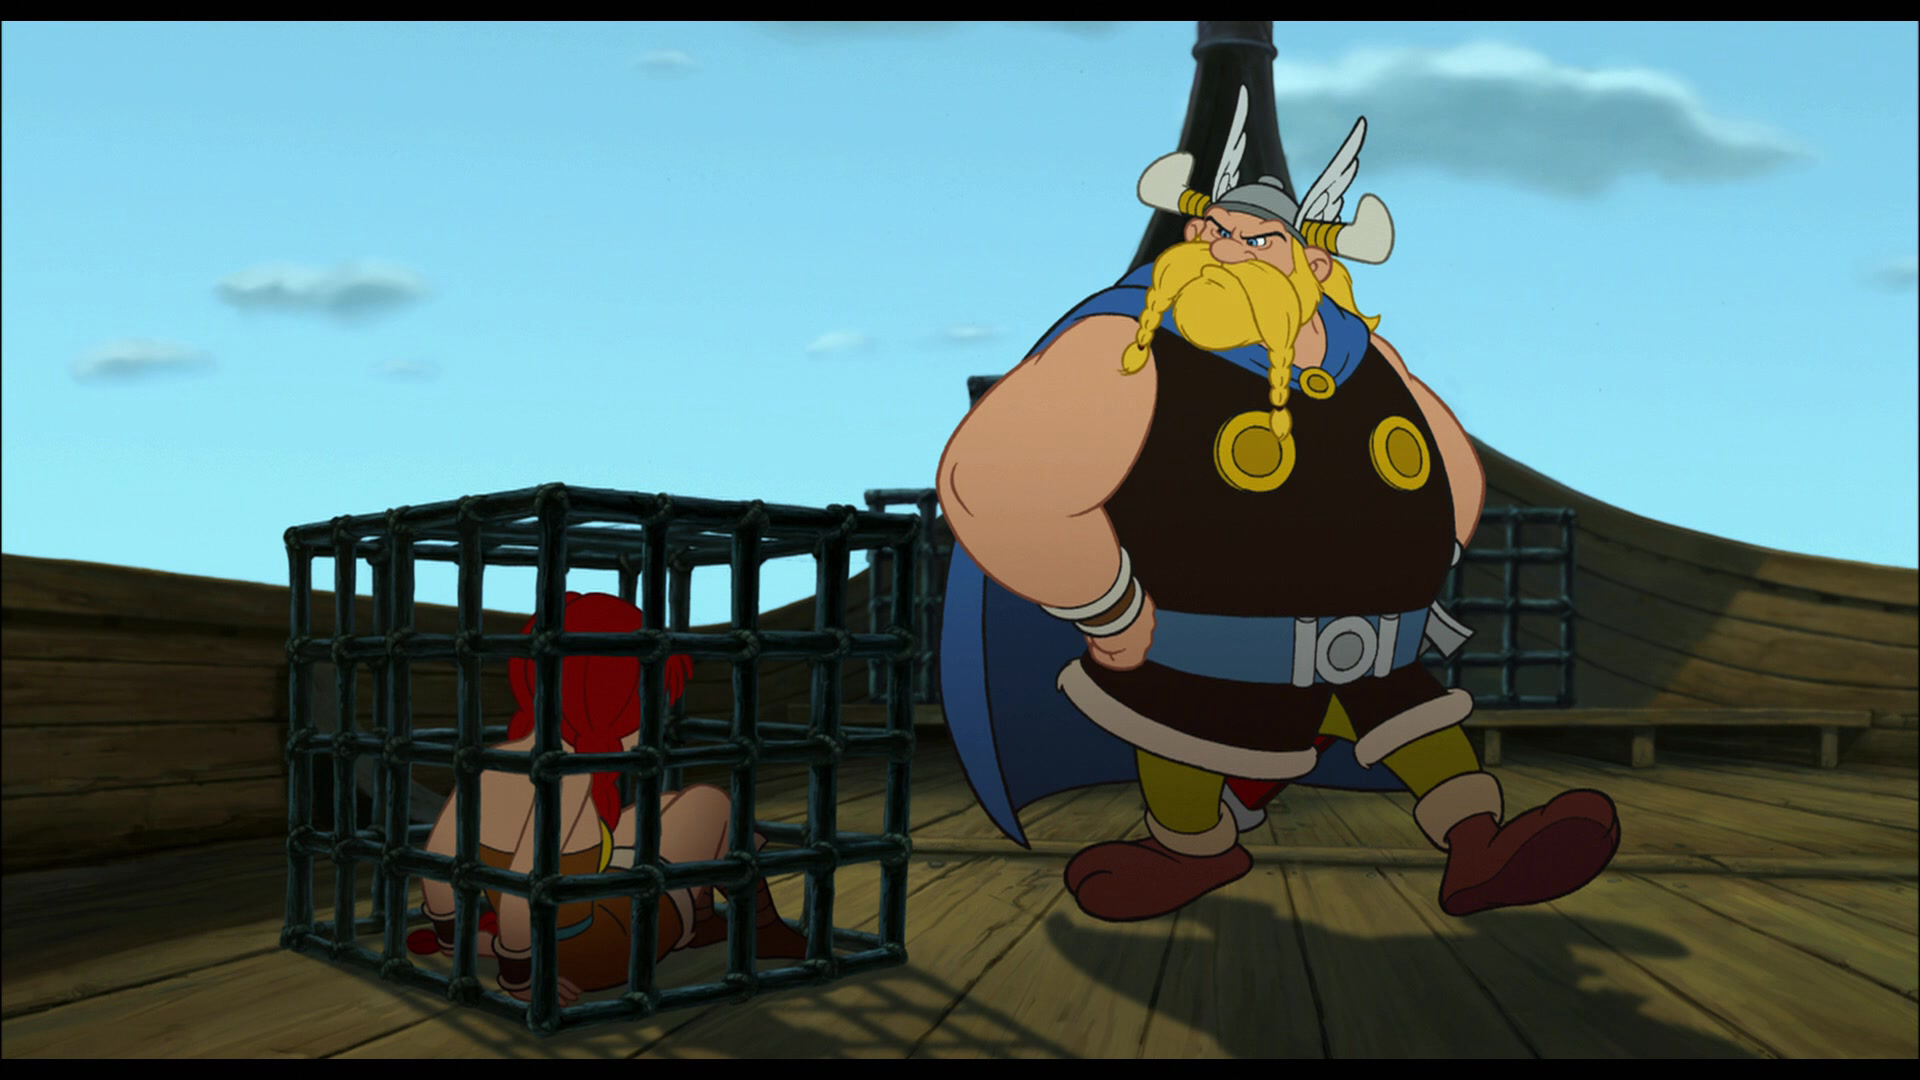 Xem Phim Asterix Và Cướp Biển Vikings (Asterix Et Les Vikings)